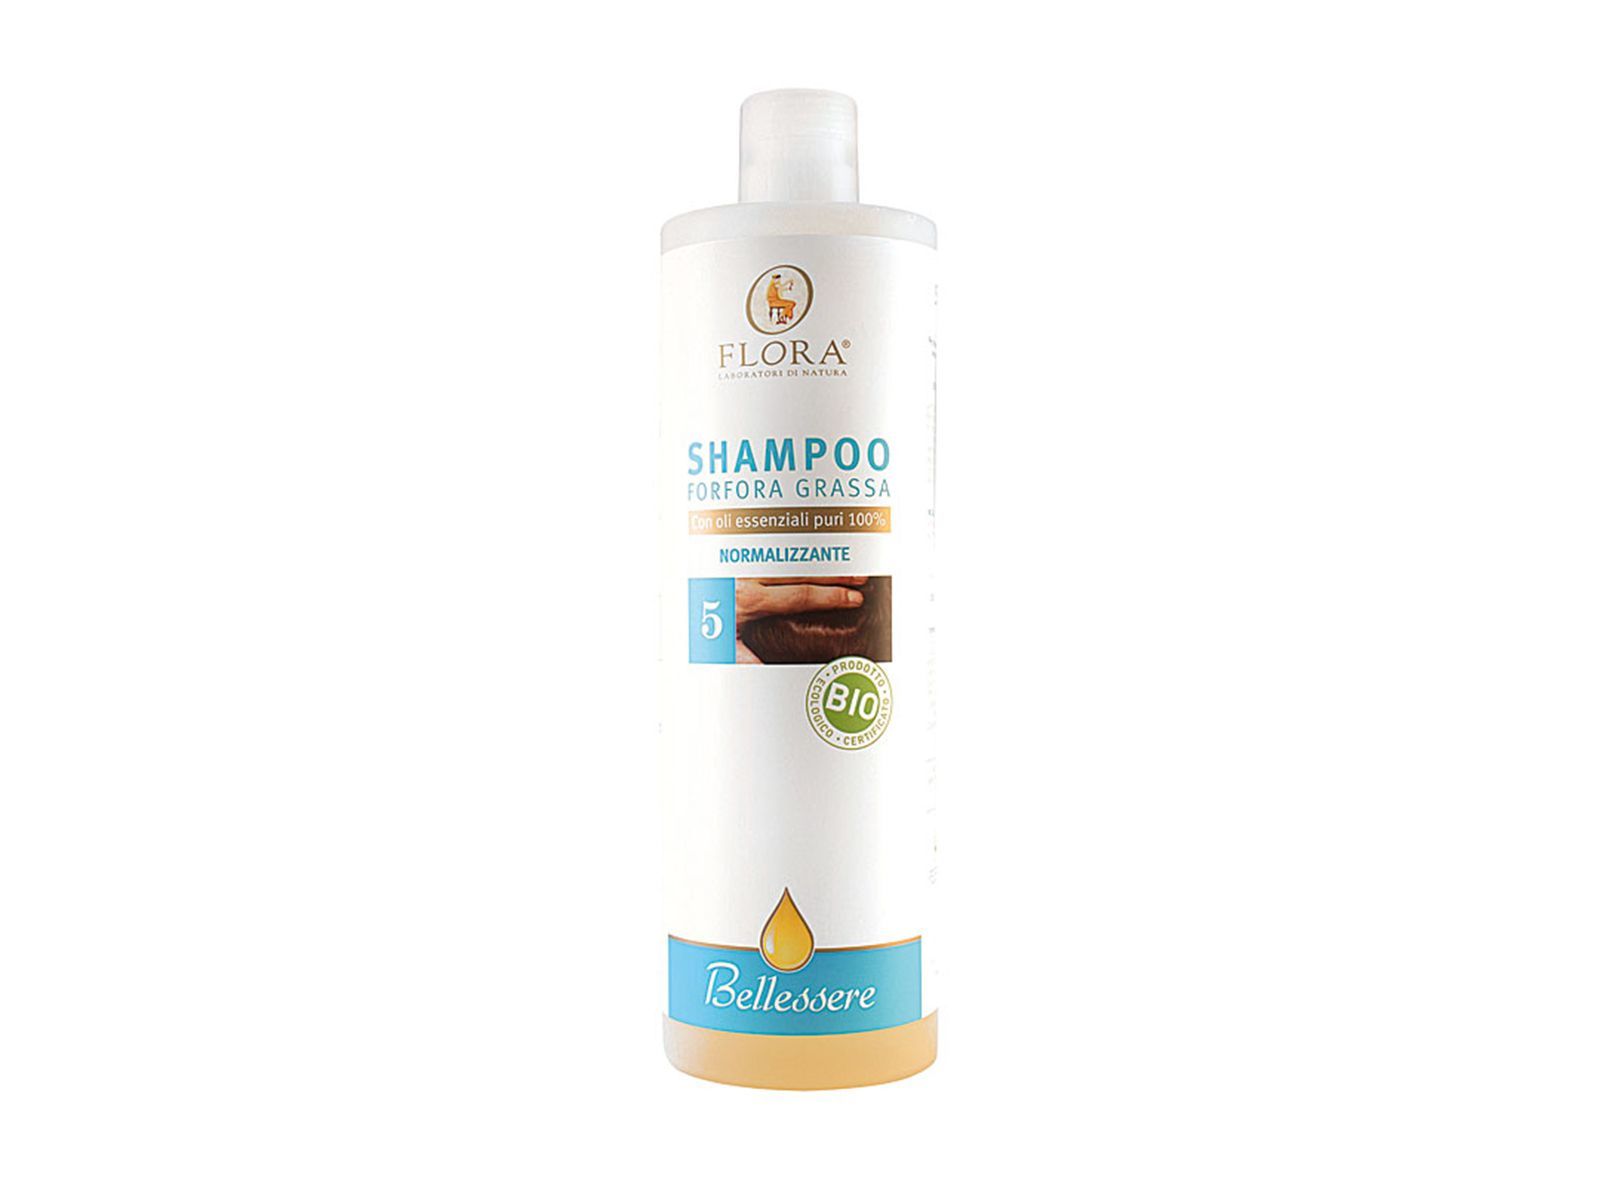 Shampoo forfora grassa - Contenuto 1 lt